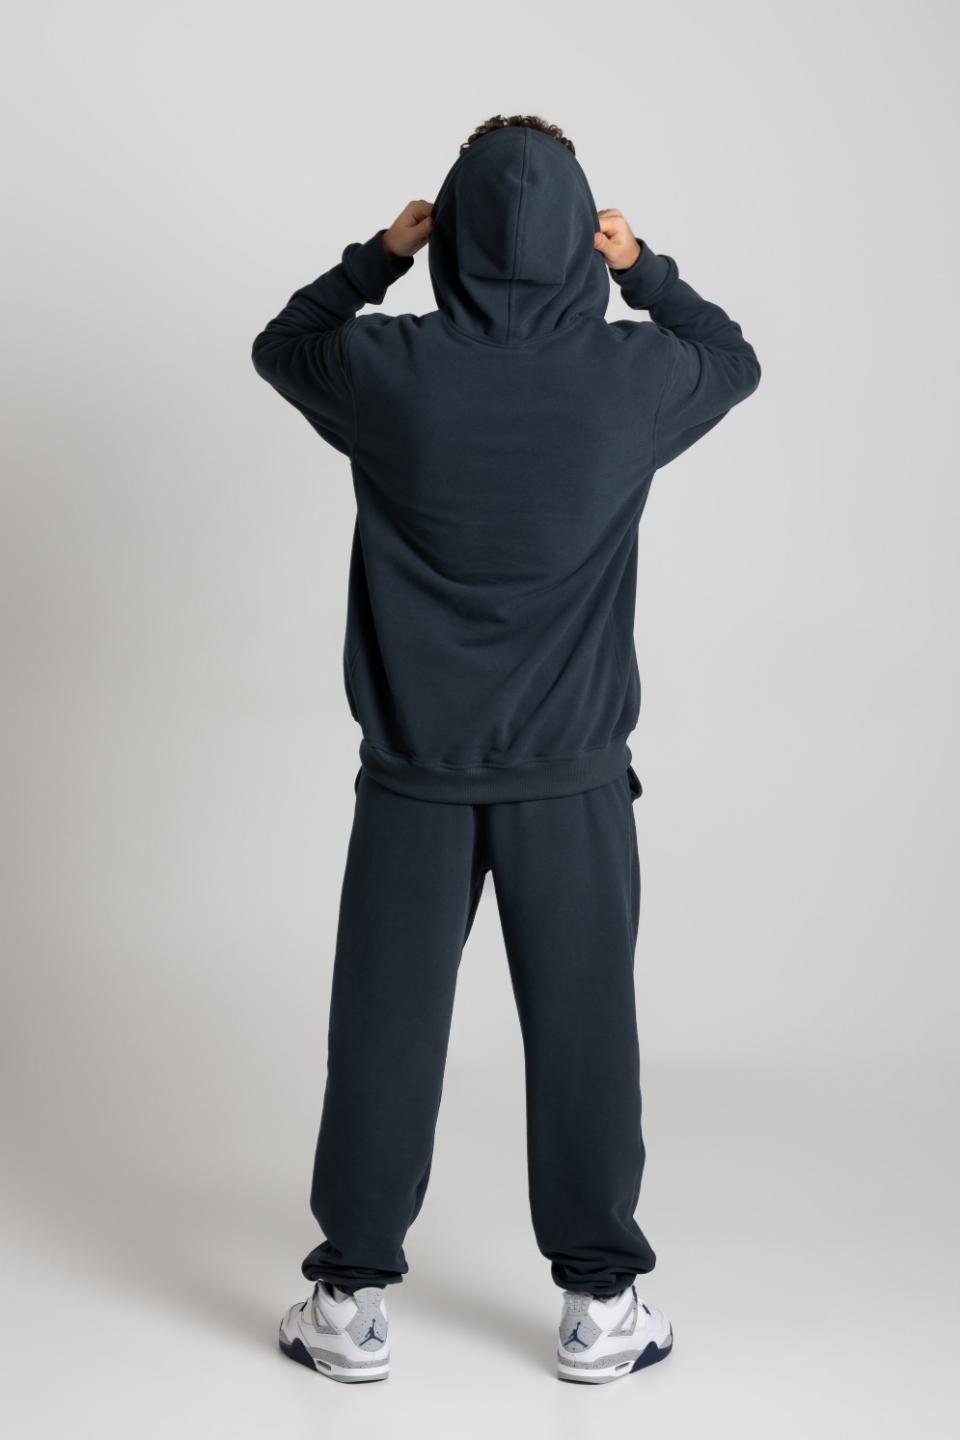 Spodnie męskie dresowe joggery - granatowe - Chiara Wear